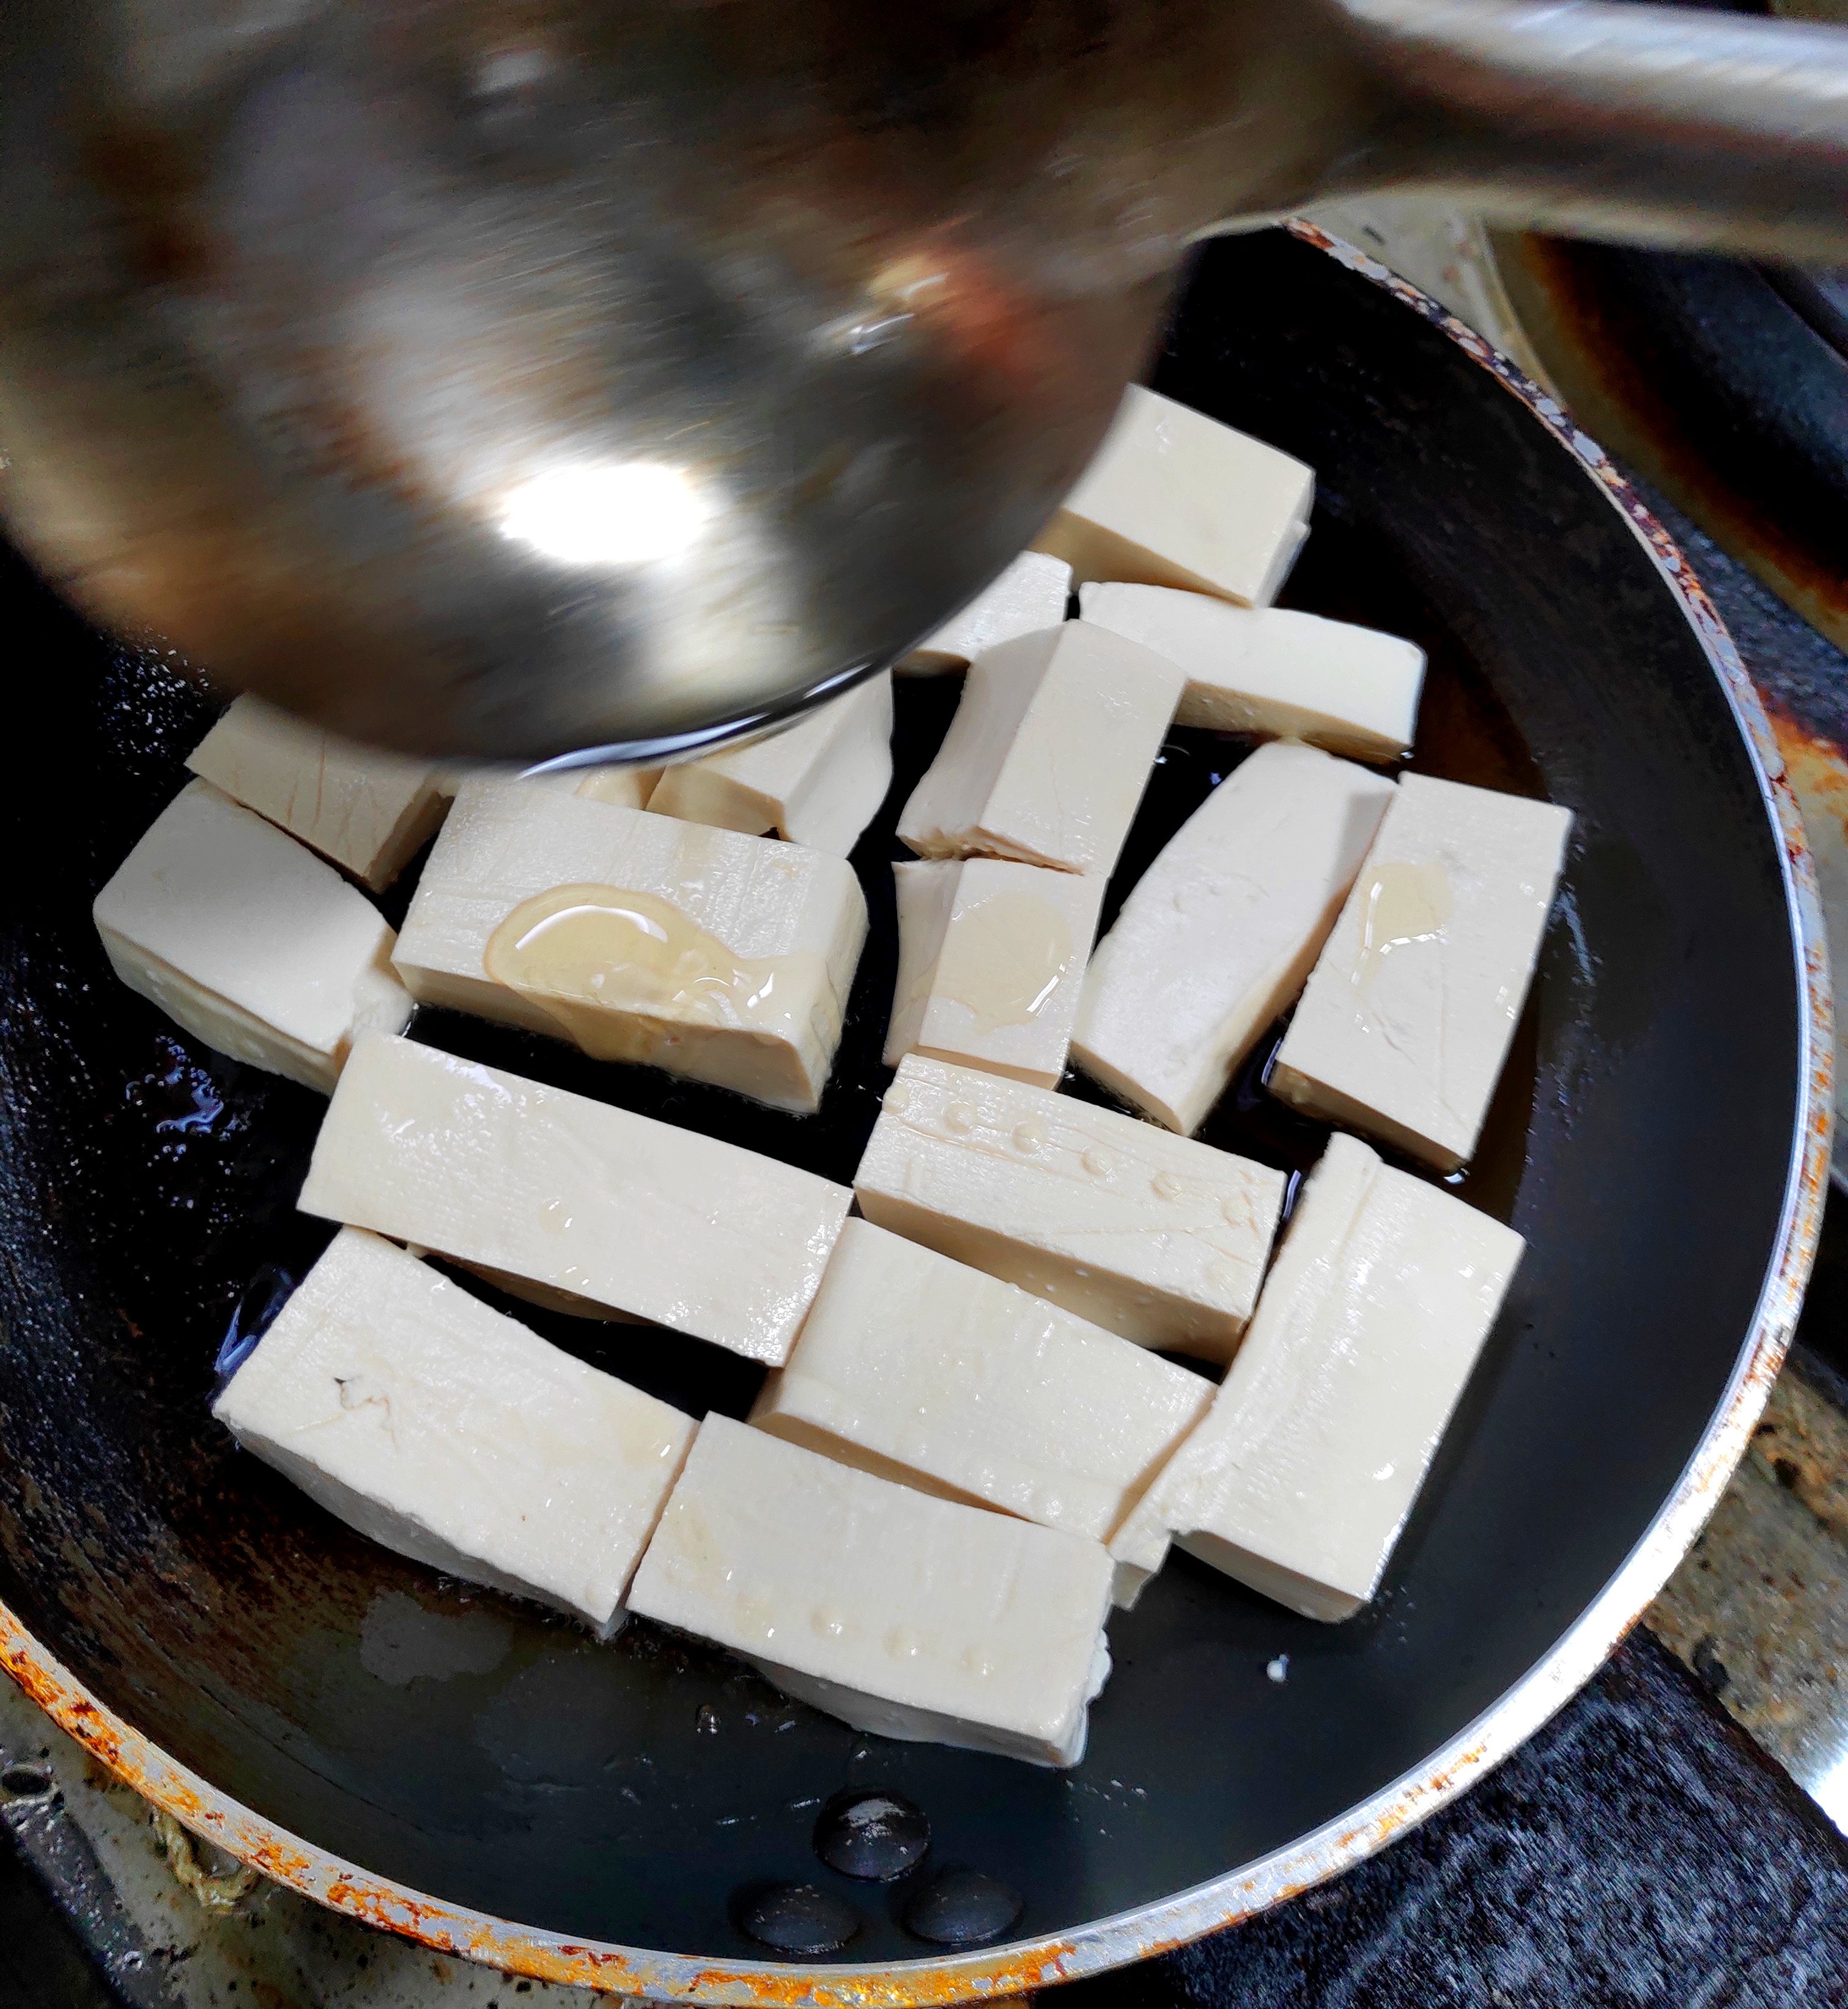 谷香美食菜谱煎焗豆腐,农家豆腐塞肉,既有内涵又有味道